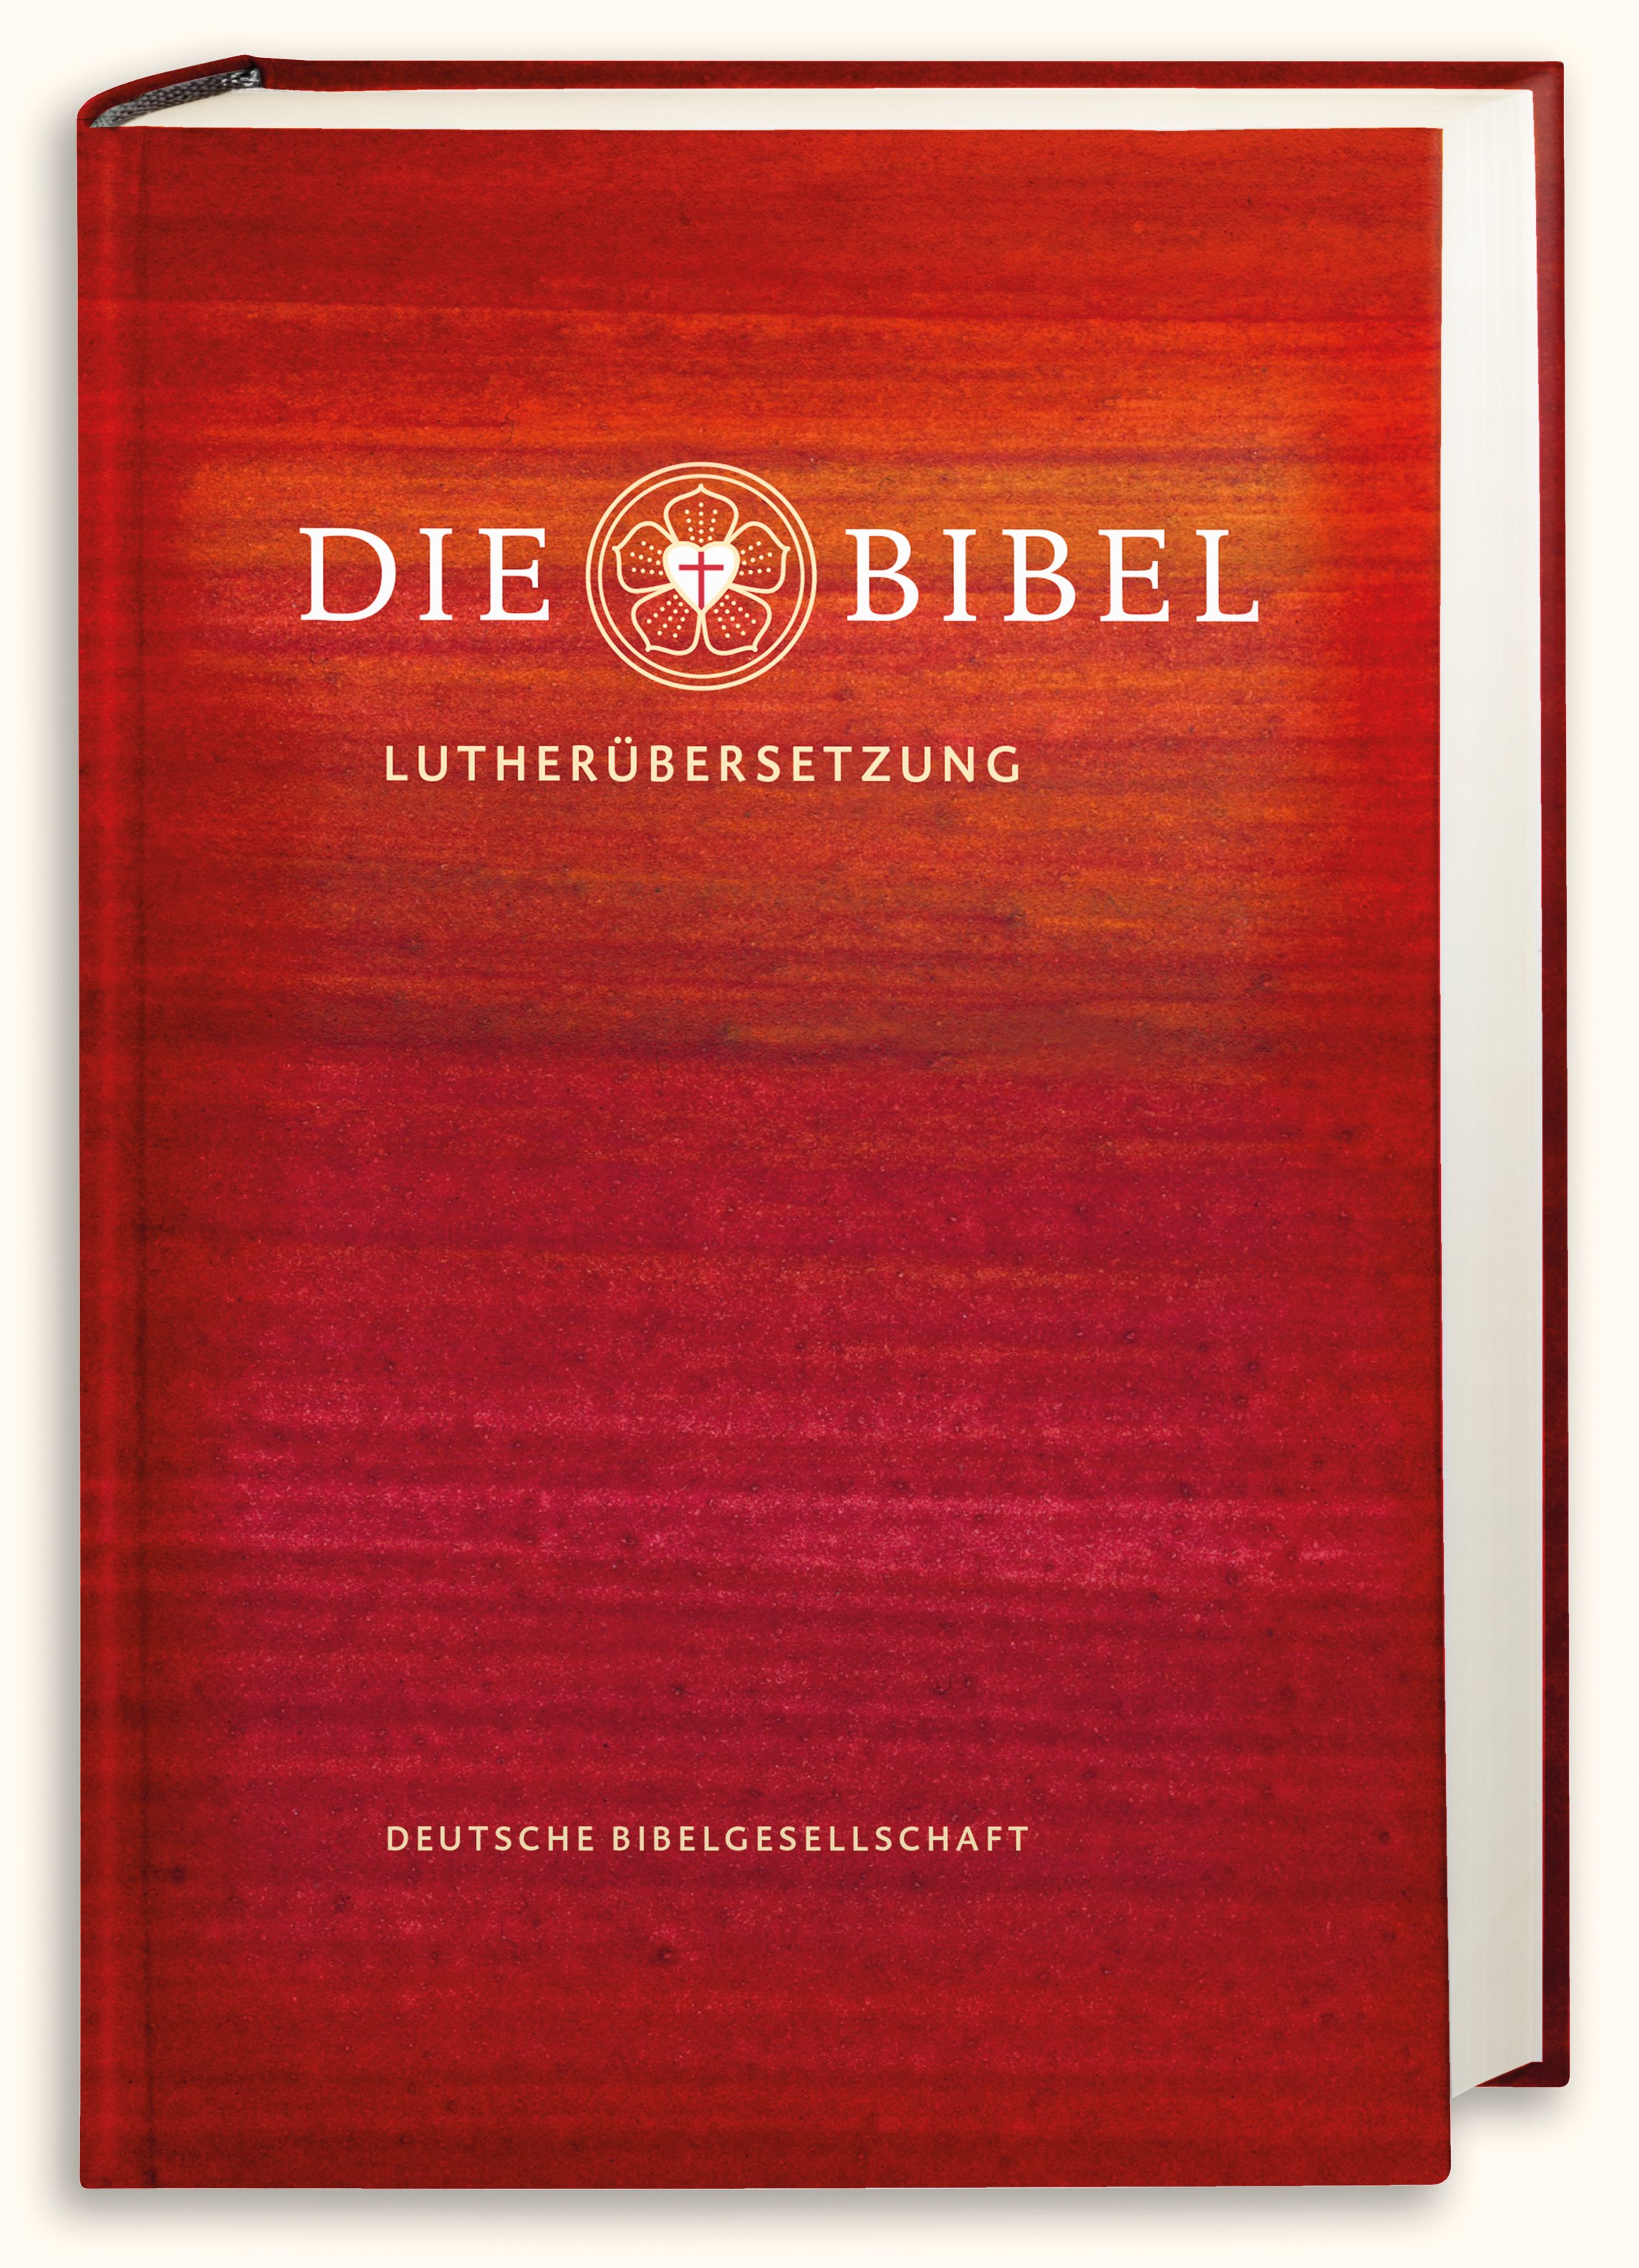 Bibelausgaben Die Bibel nach Luthers Übersetzung - Lutherbibel revidiert 2017, Schulbibel